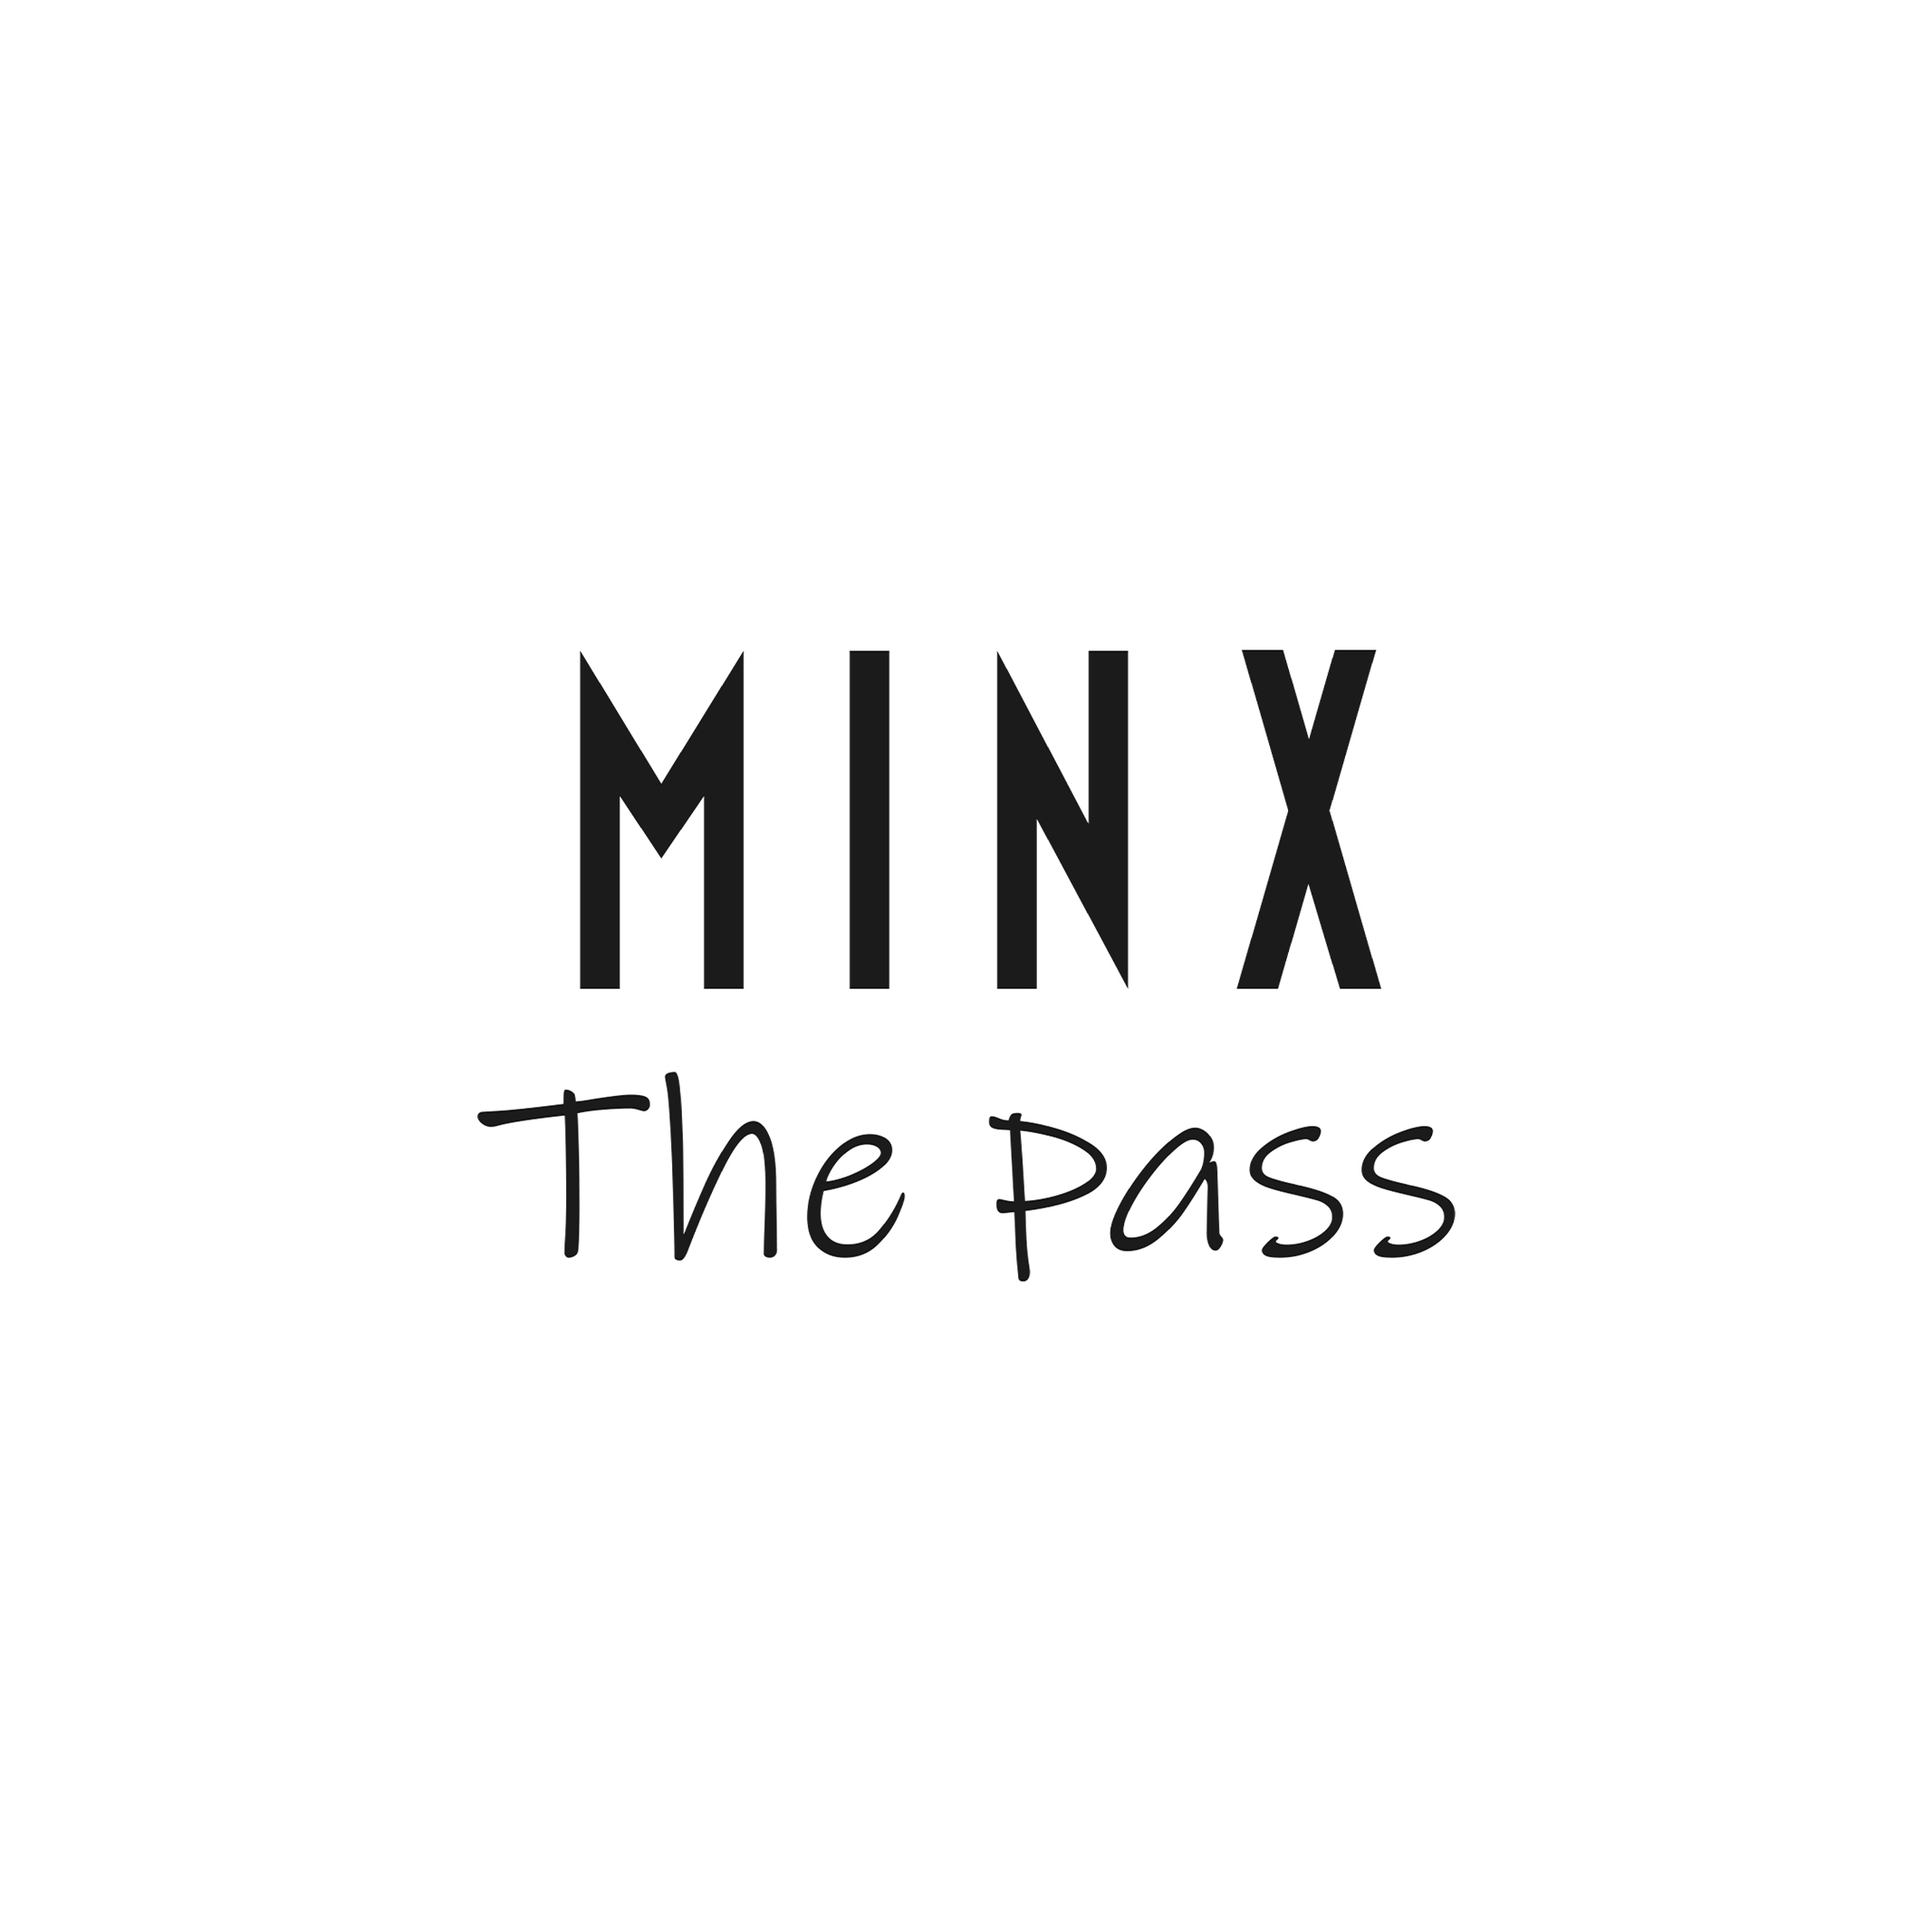 湘南エリア新店舗「MINX The pass」